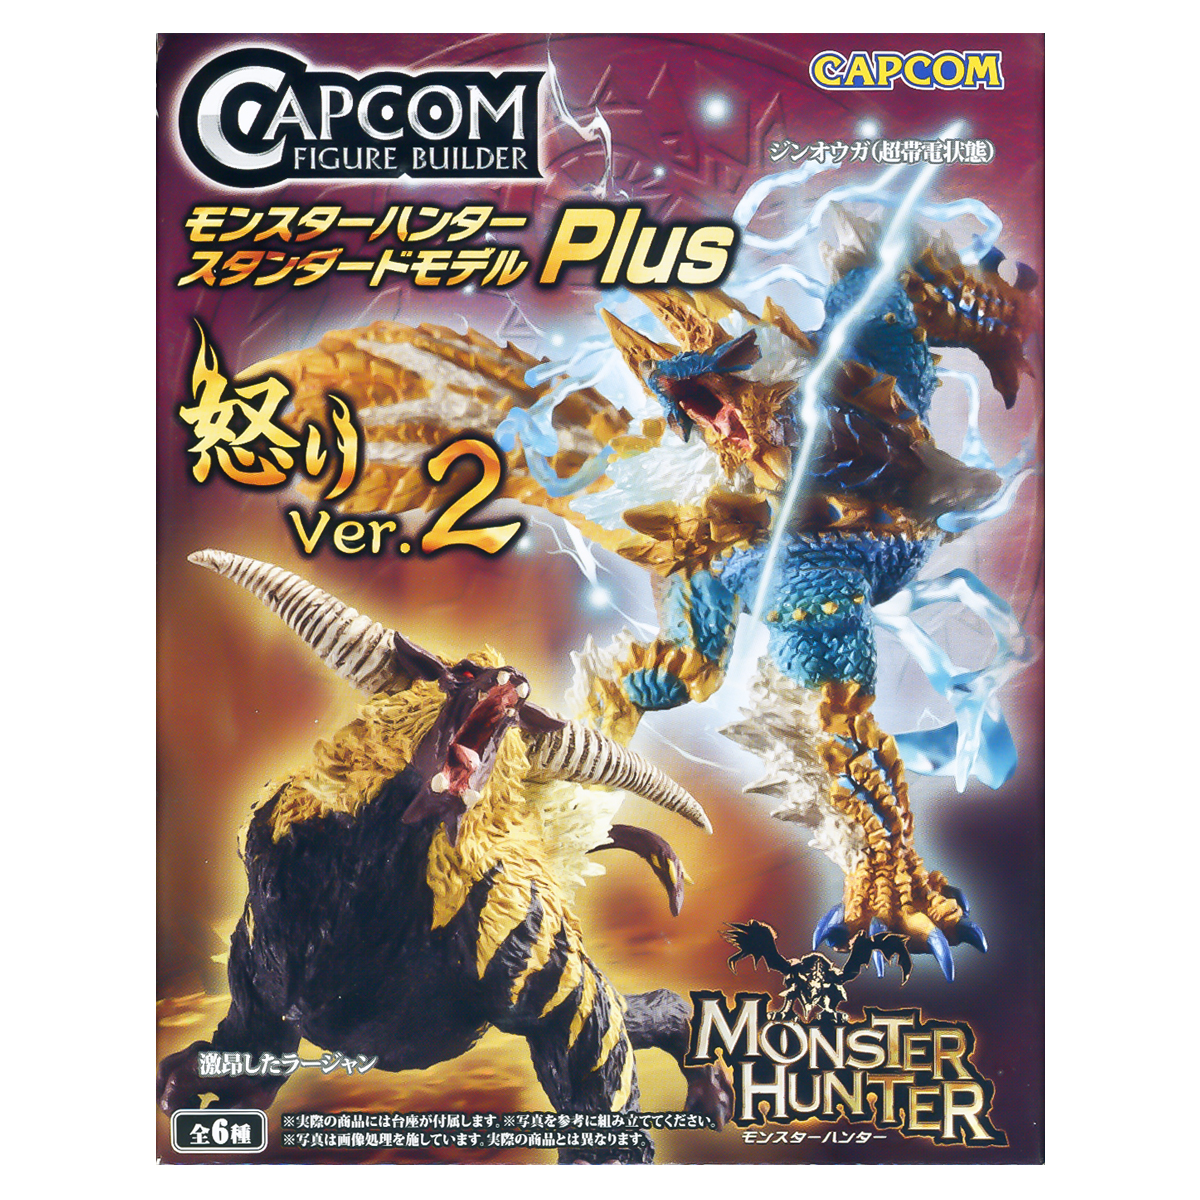 Monster Hunter Trading Figure Anger Ver. 2 Action Figure Capcom Japan Random Blind Box